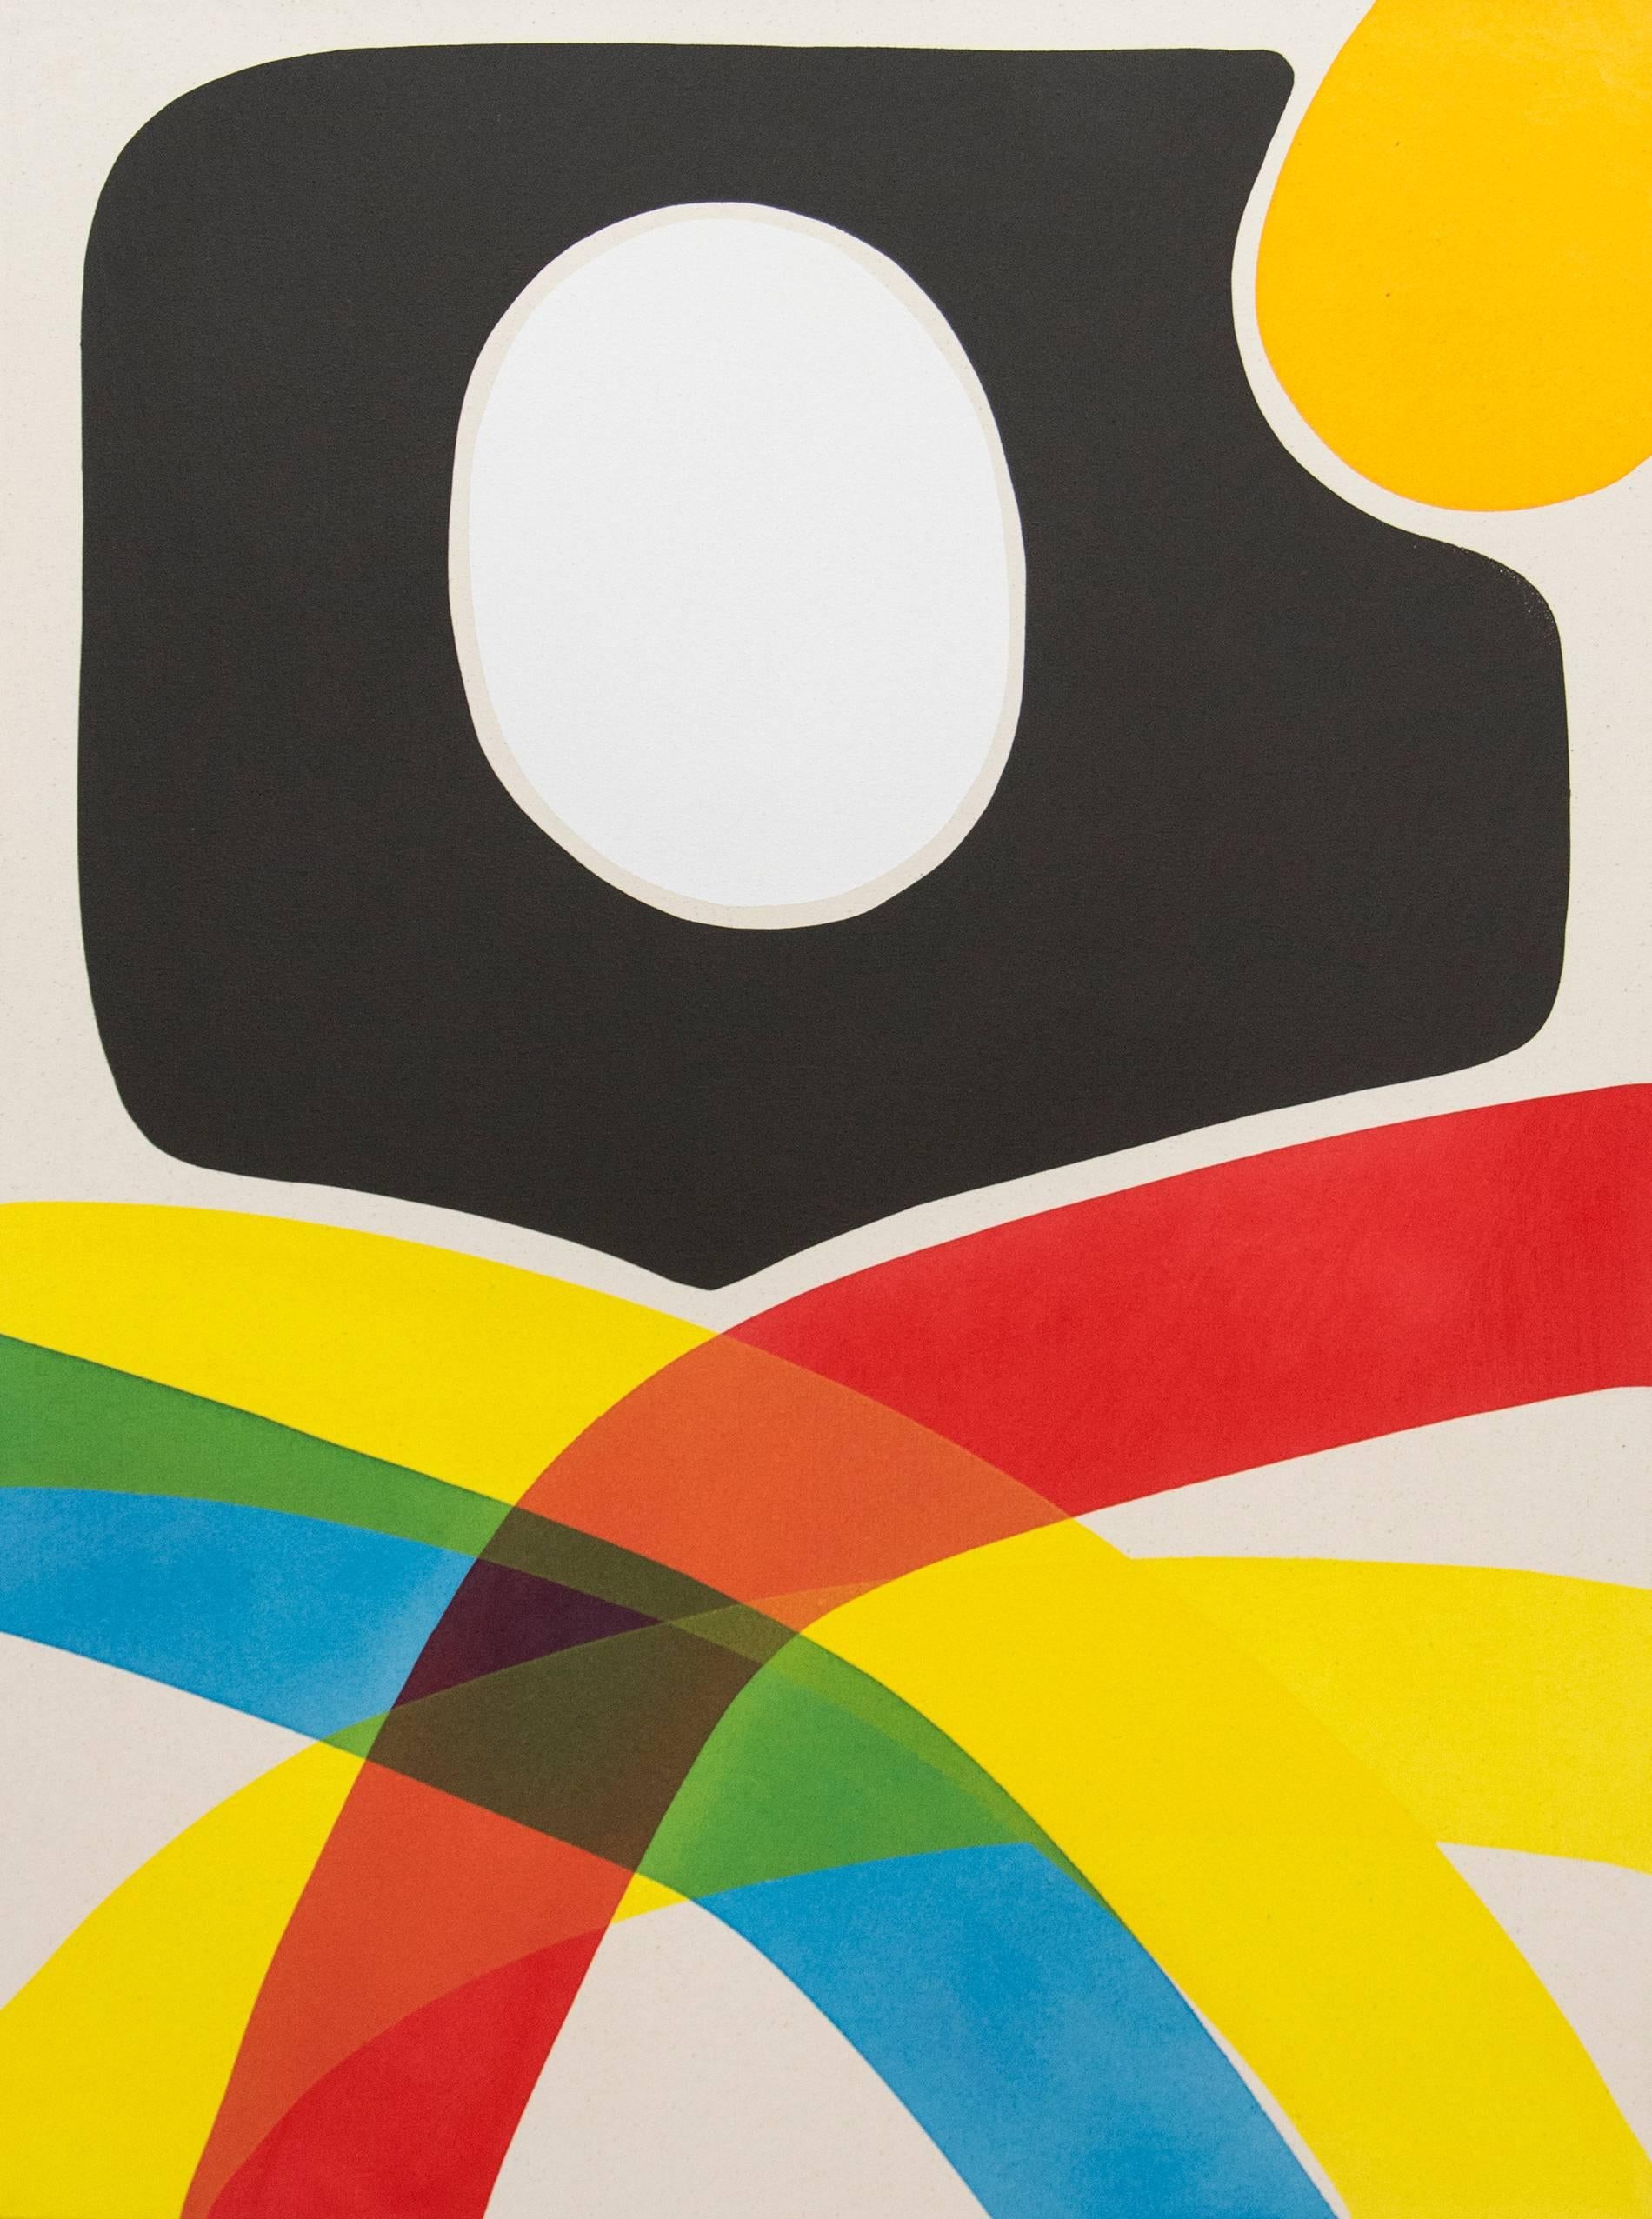 Cutout avec blanc et jaune - formes abstraites et colorées entrecroisées sur toile - Painting de Aron Hill